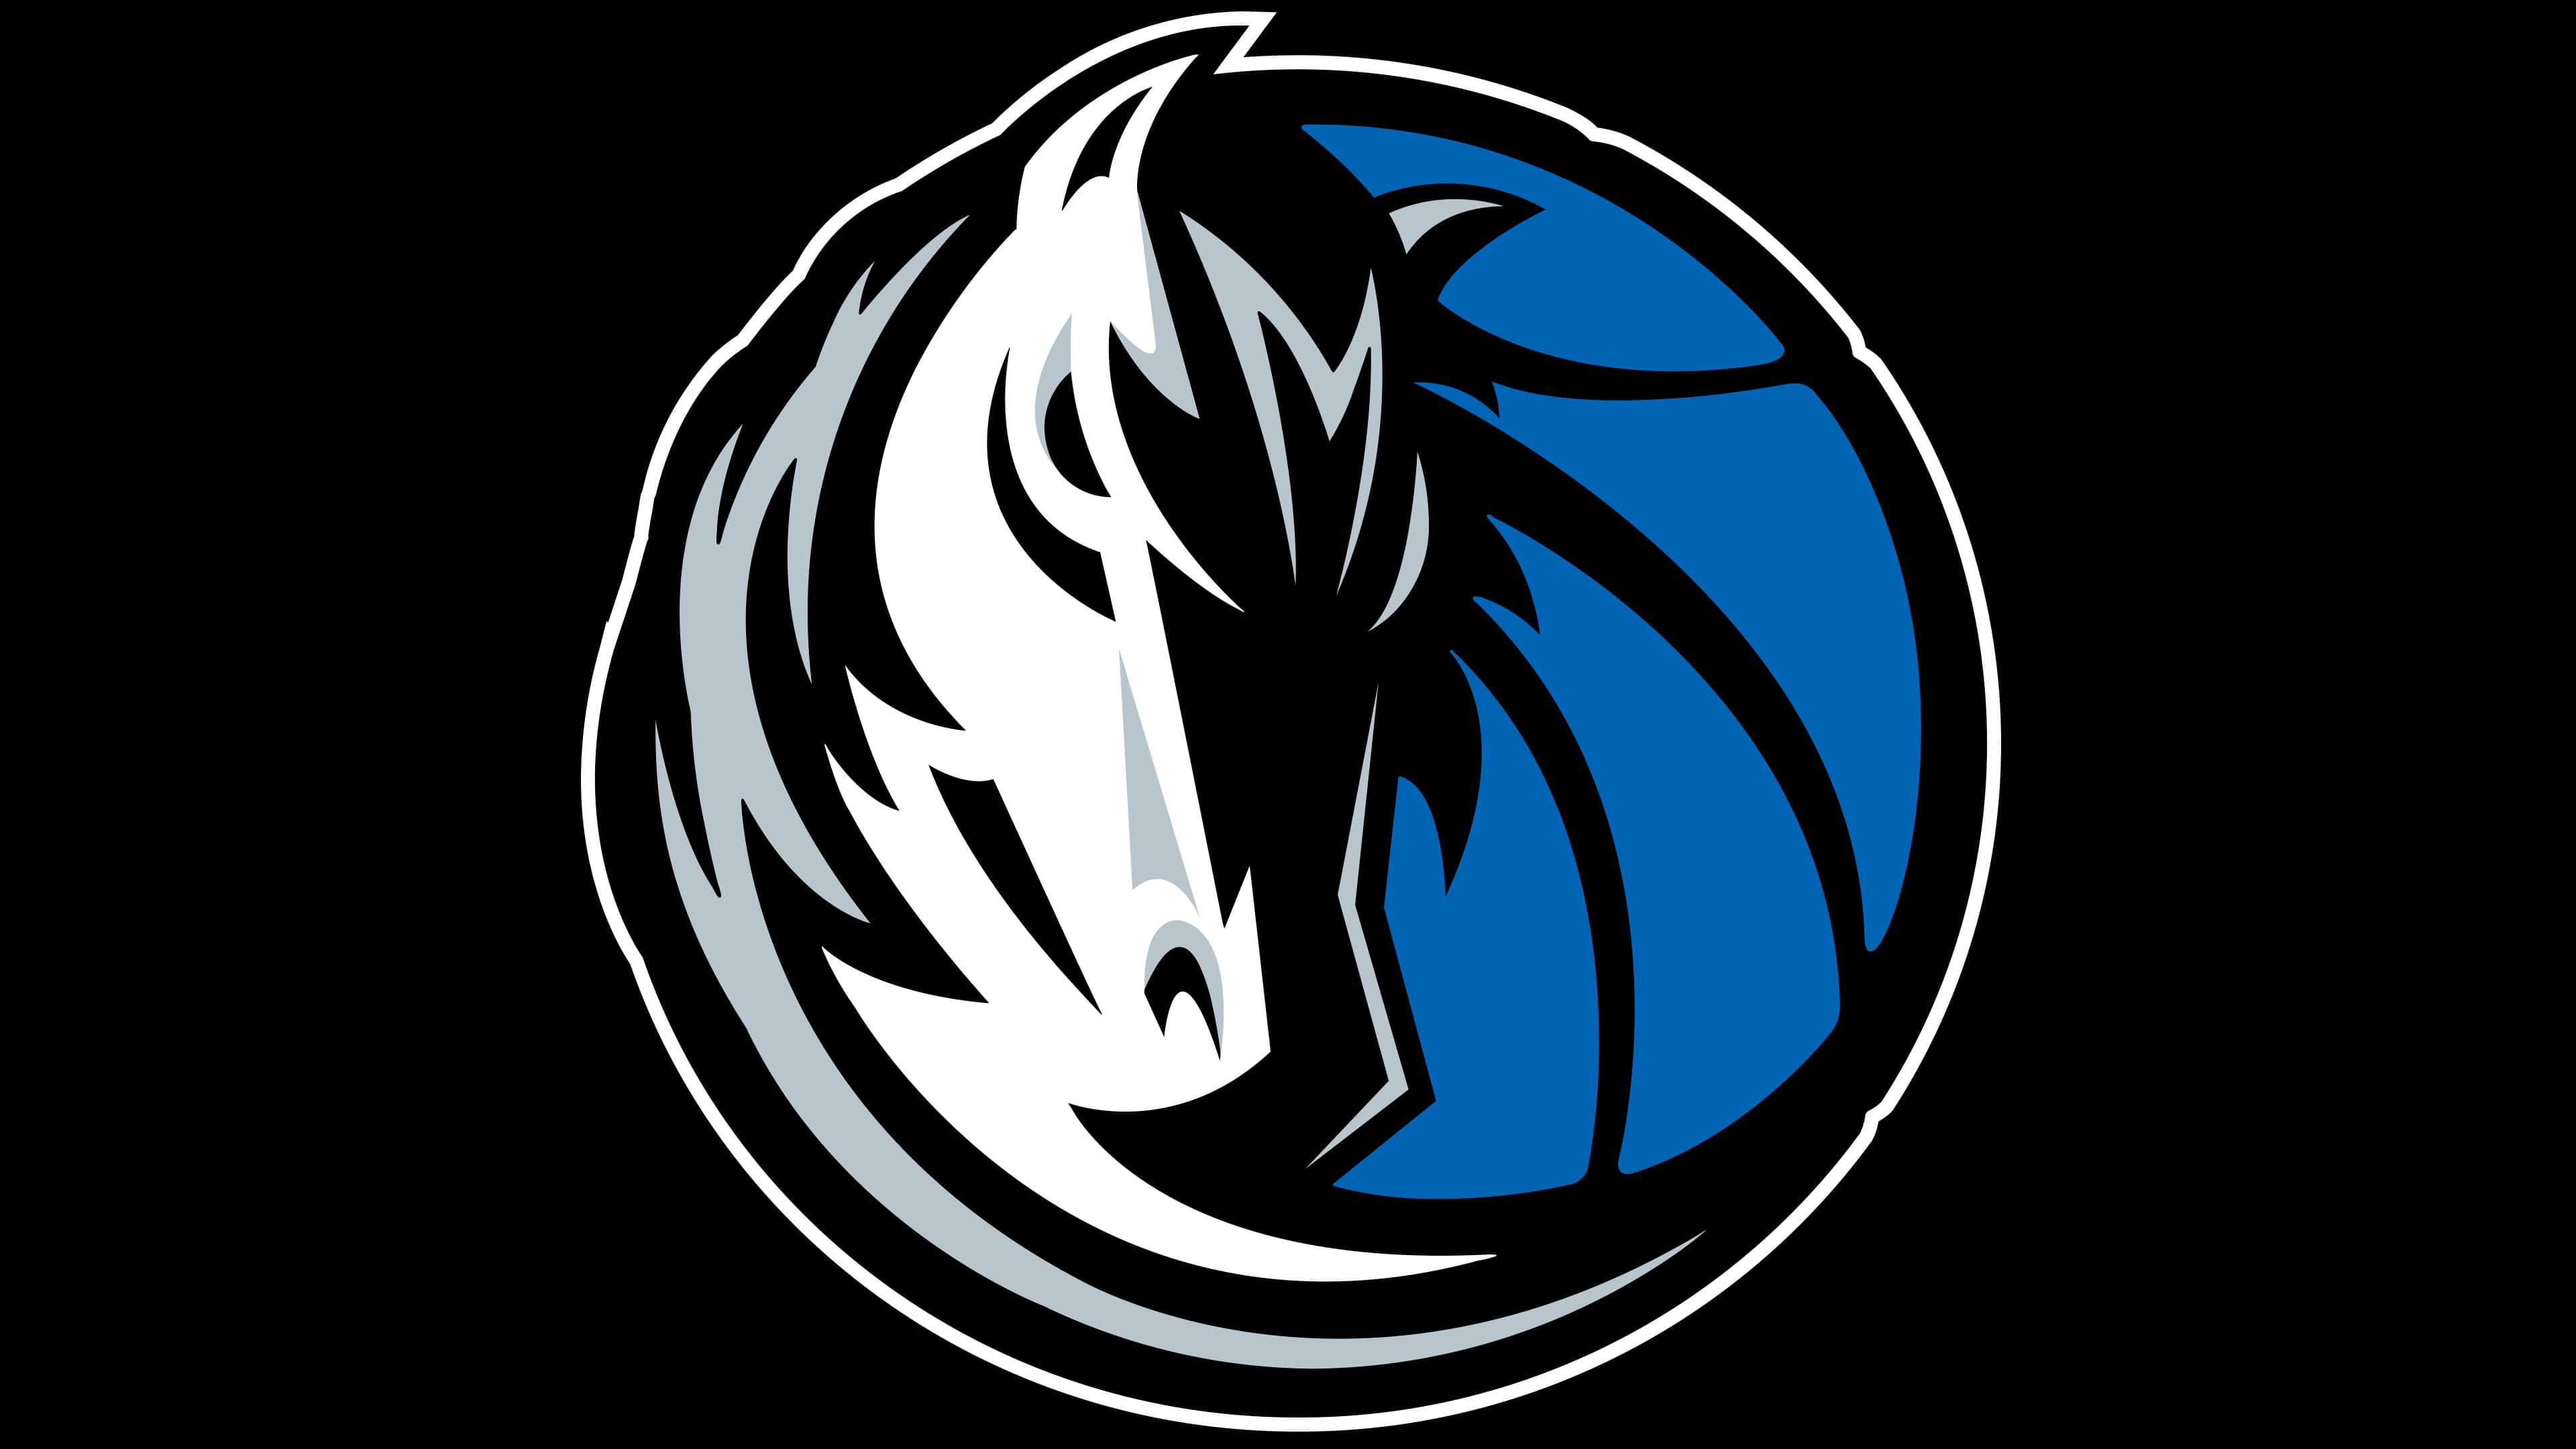 Dallas Mavericks Logo Valor História Png